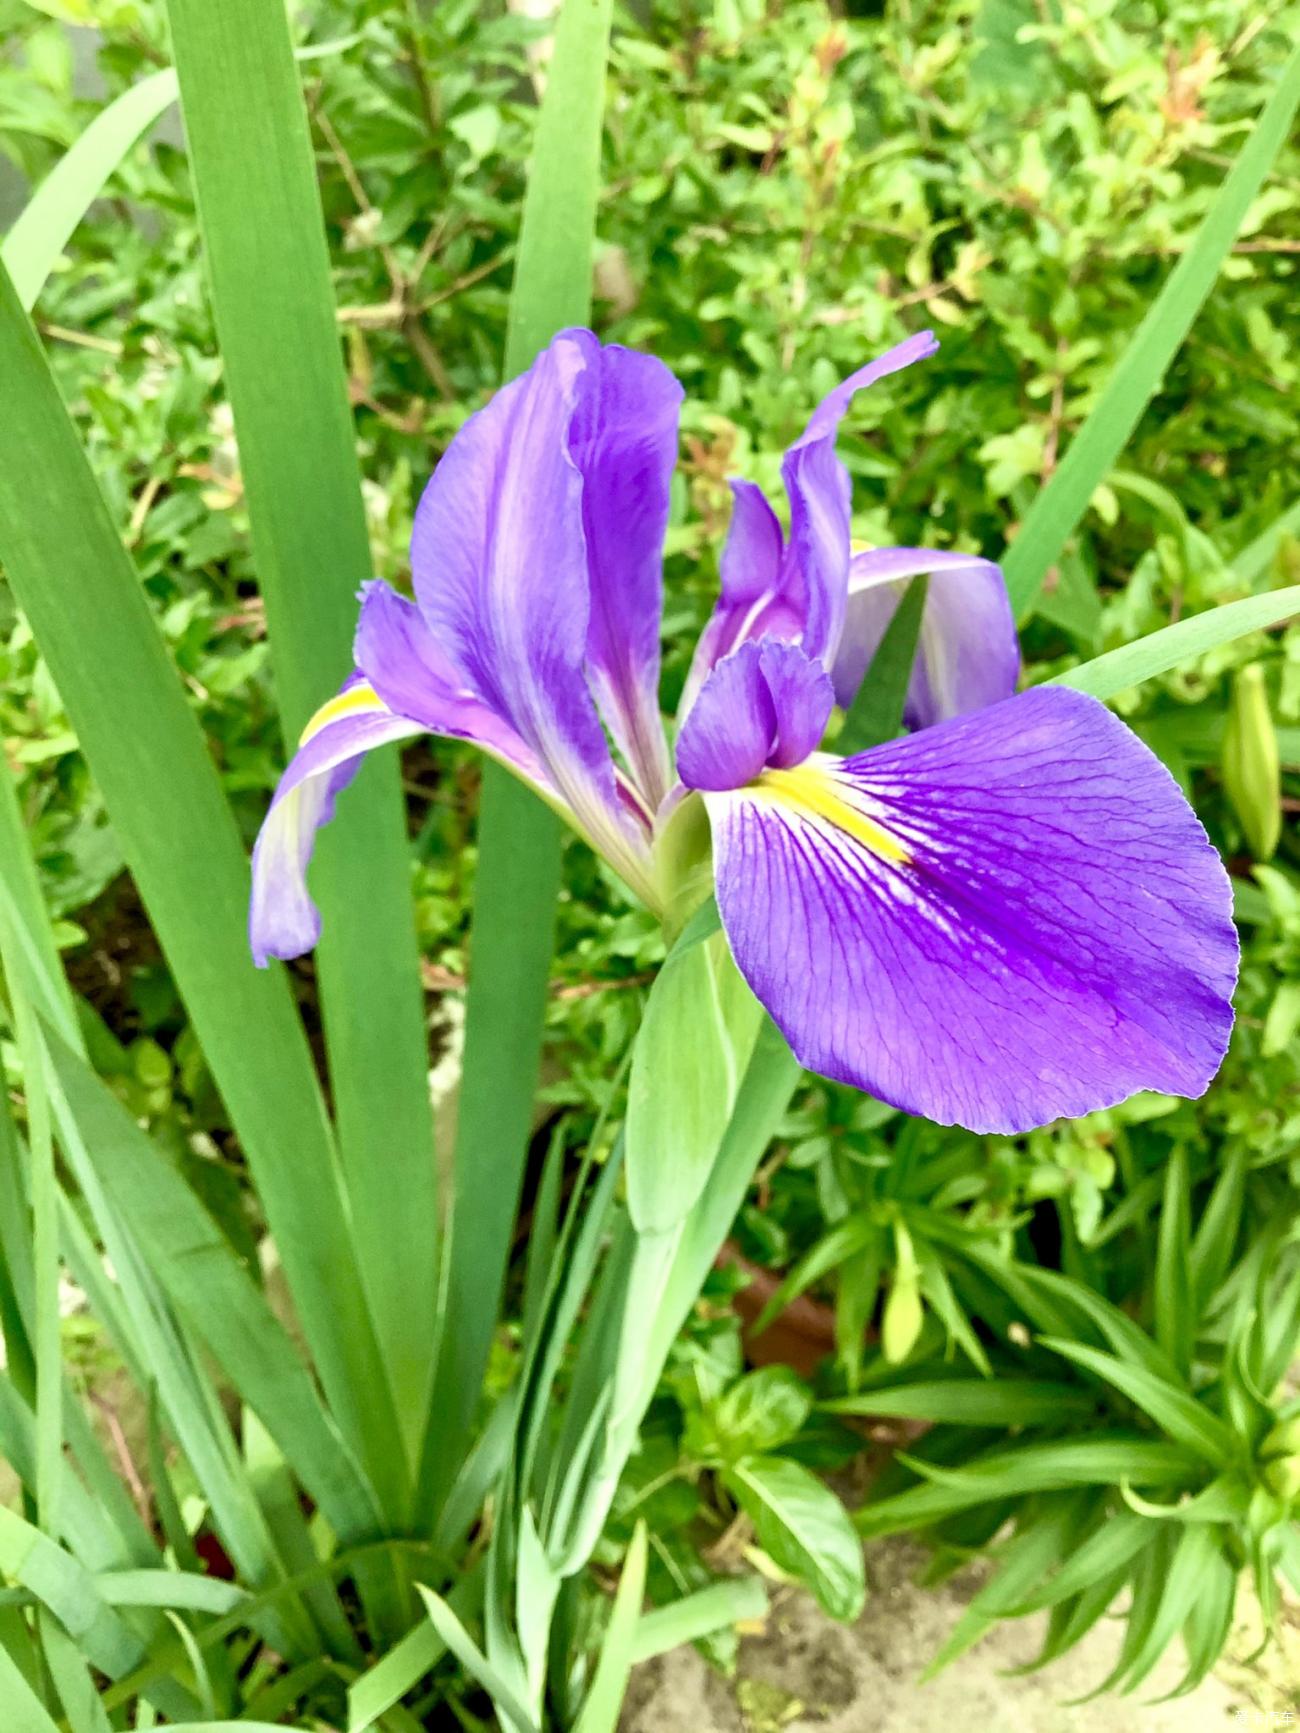 > 紫色鸢尾花,开了,真漂亮